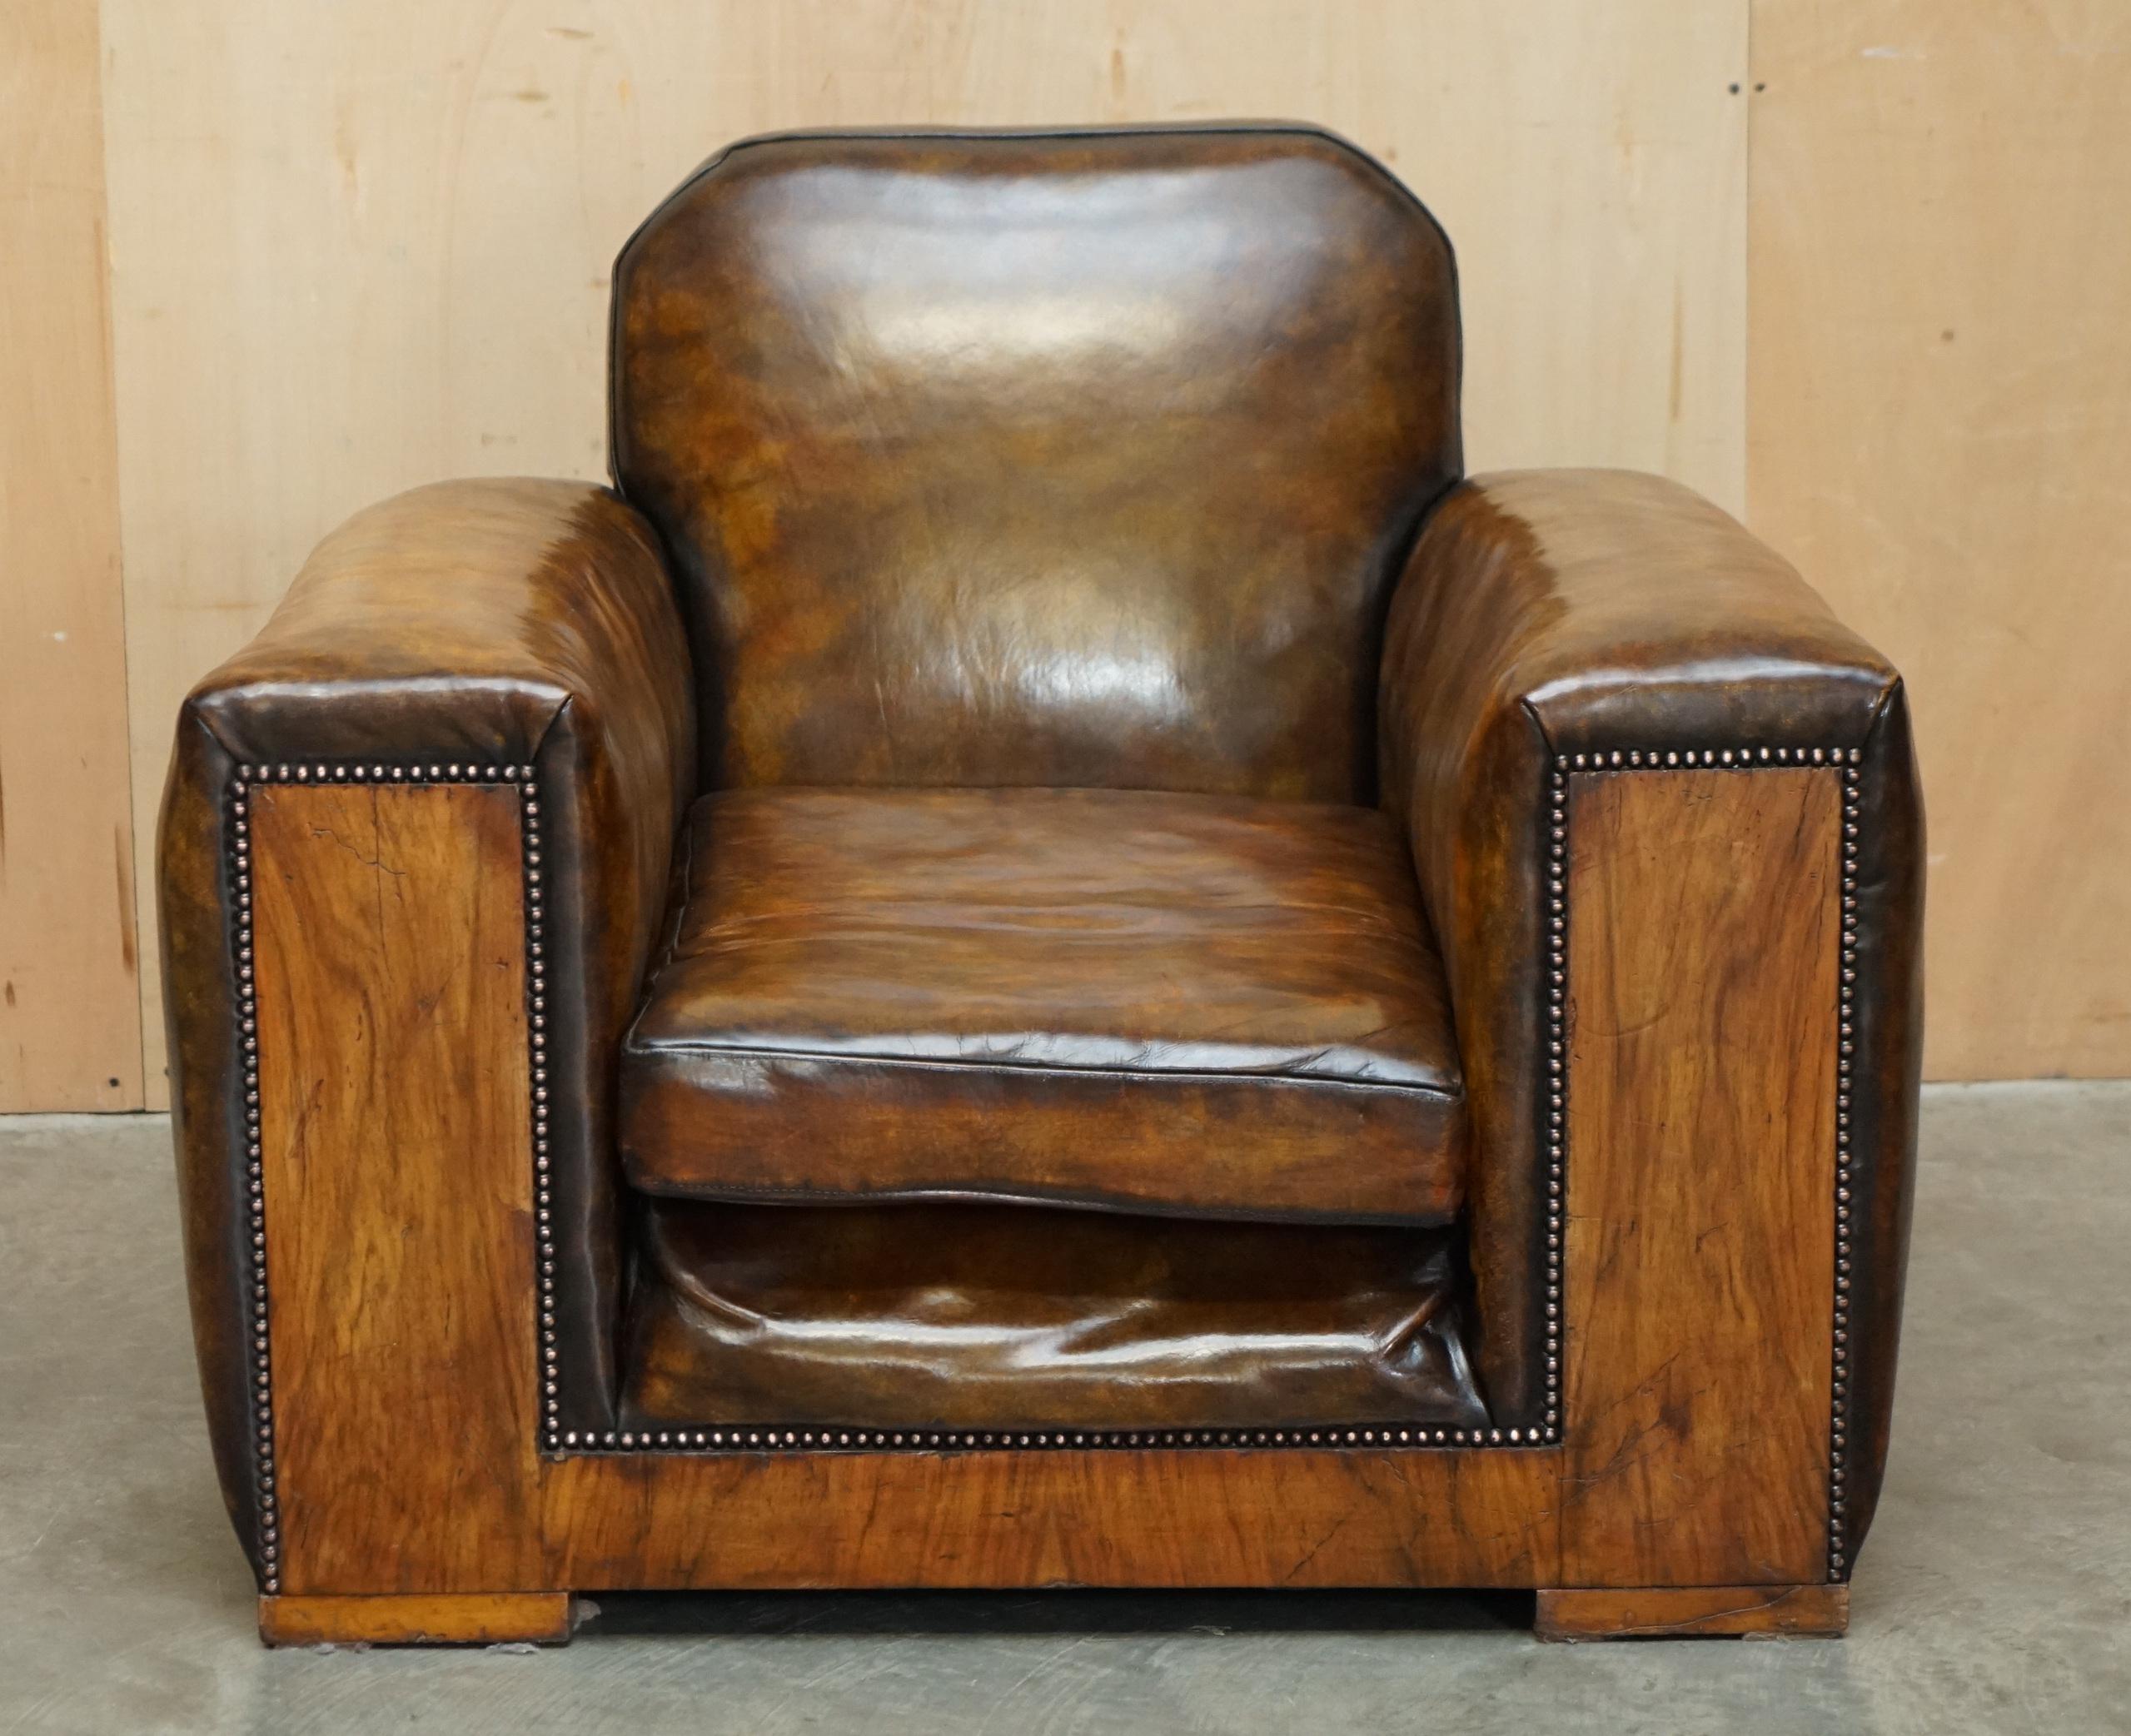 Royal House Antiques

Royal House Antiques freut sich, diesen schönen, vollständig restaurierten Vintage-Sessel aus handgefärbtem braunem Leder mit Säulen aus Nussbaumholz zum Verkauf anbieten zu können. Der Club-Sessel ist ideal für ein Odeon oder